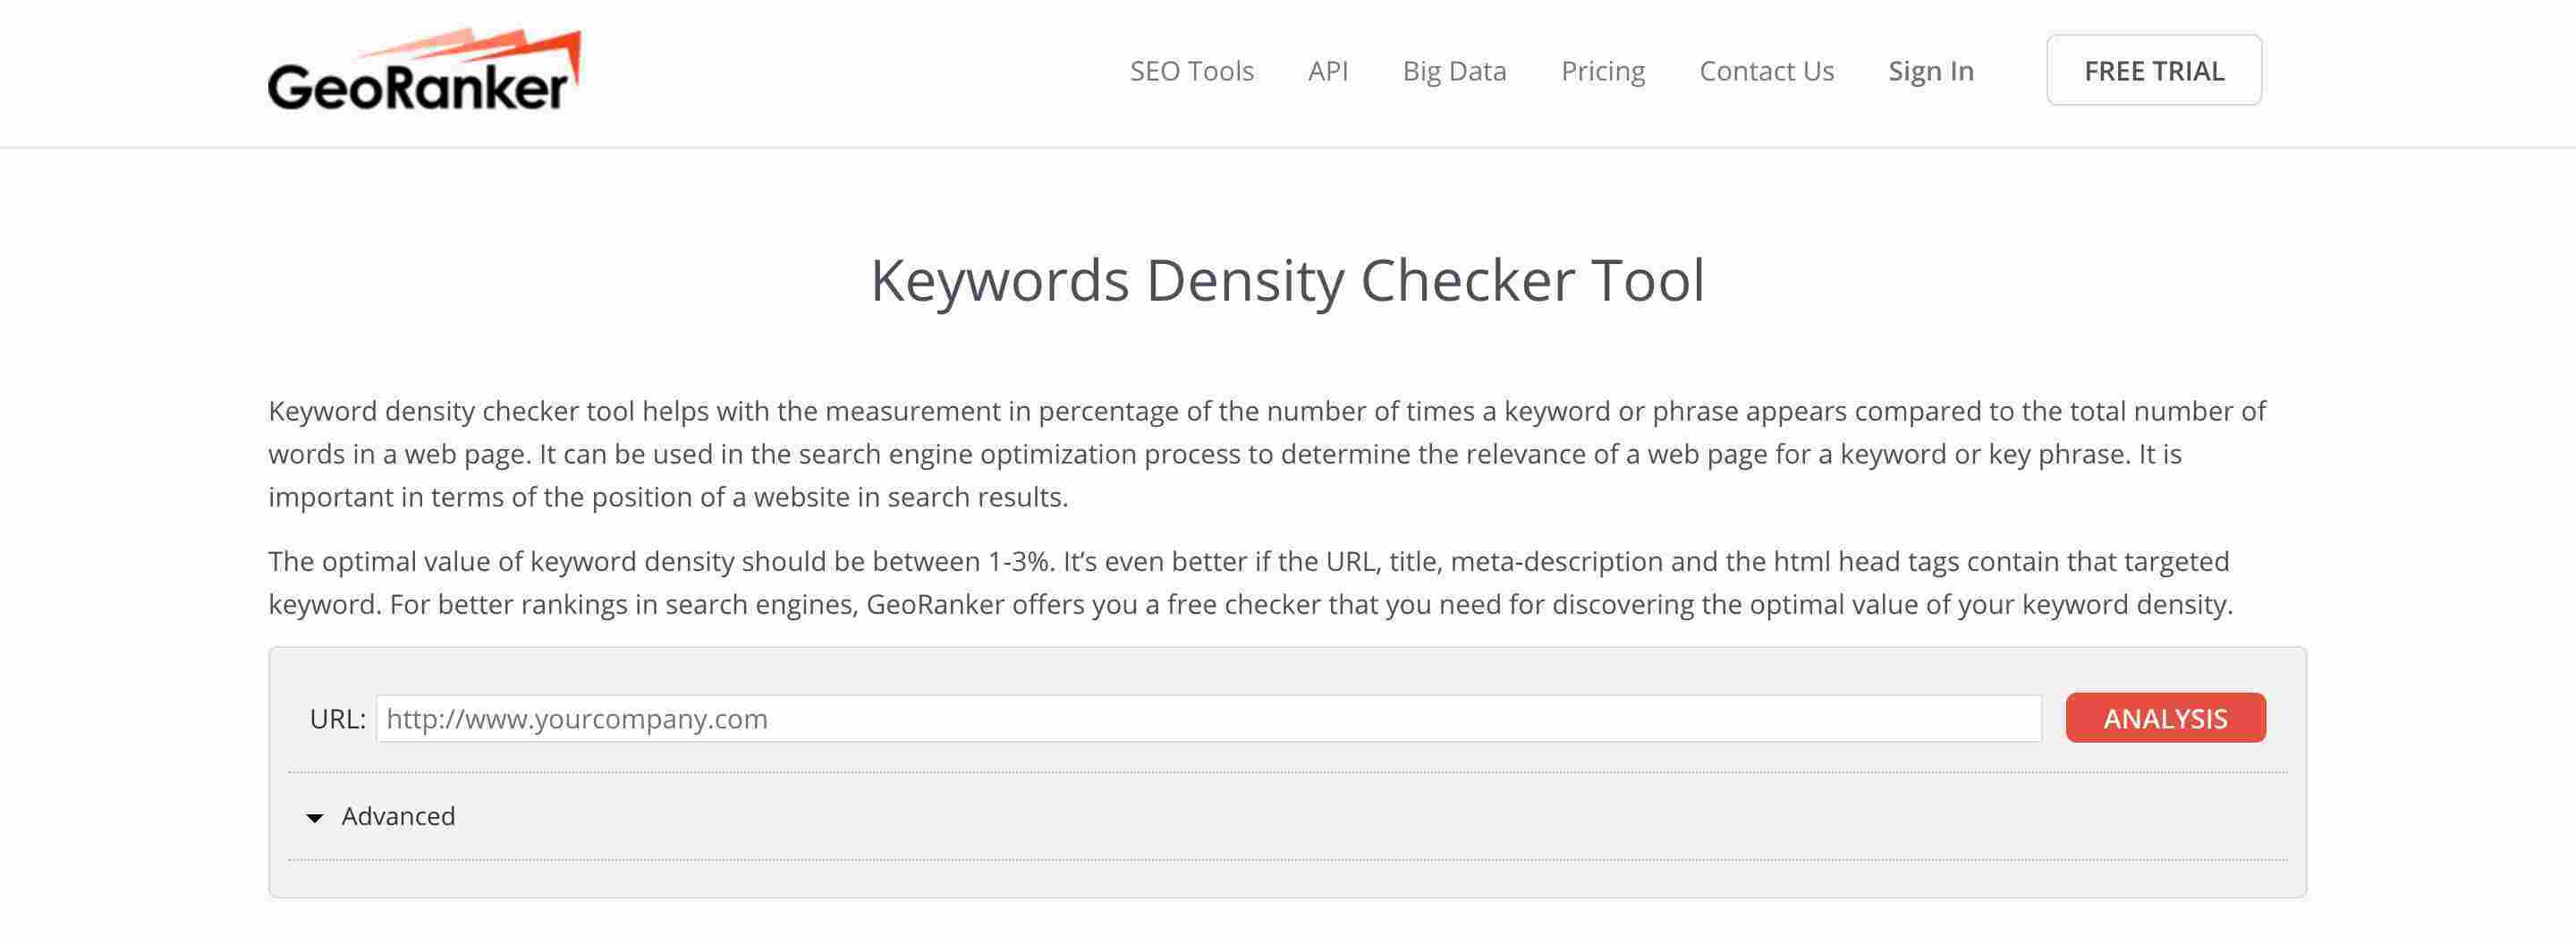 GeoRanker tools is one of the best tool to measure keyword density